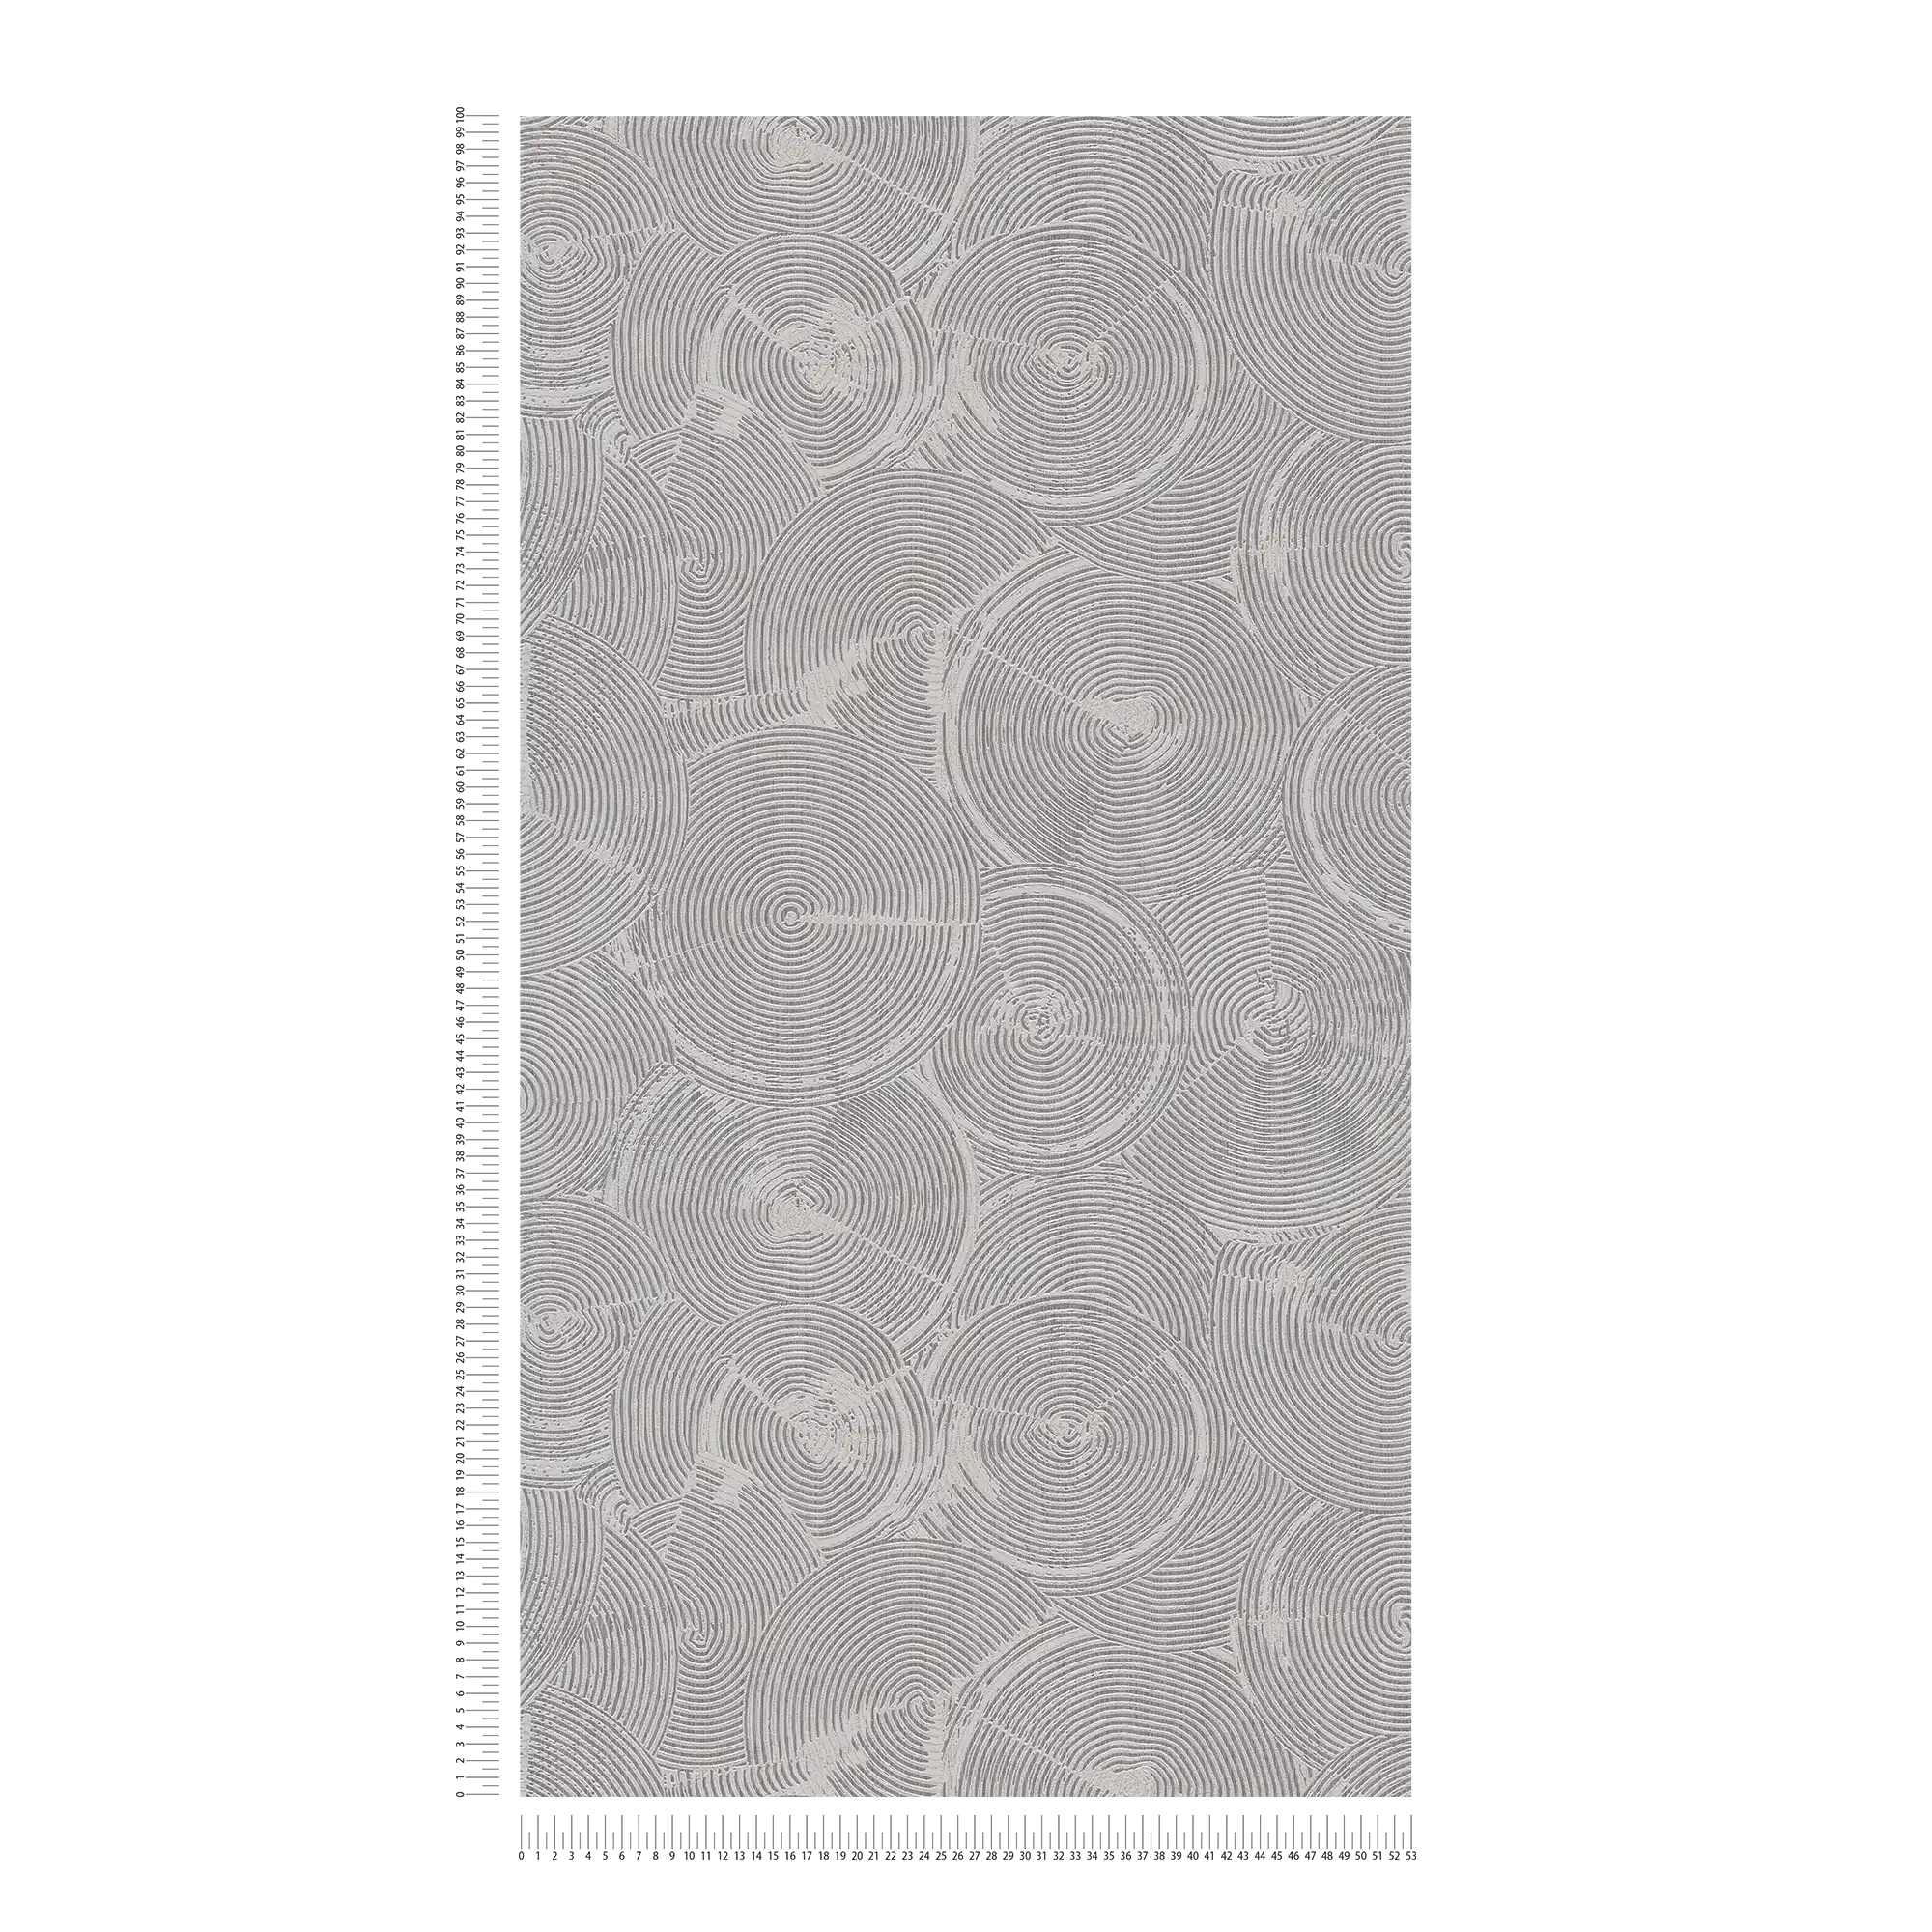             Putzoptik Tapete mit silbernem Metallic-Effekt – Grau, Metallic, Weiß
        